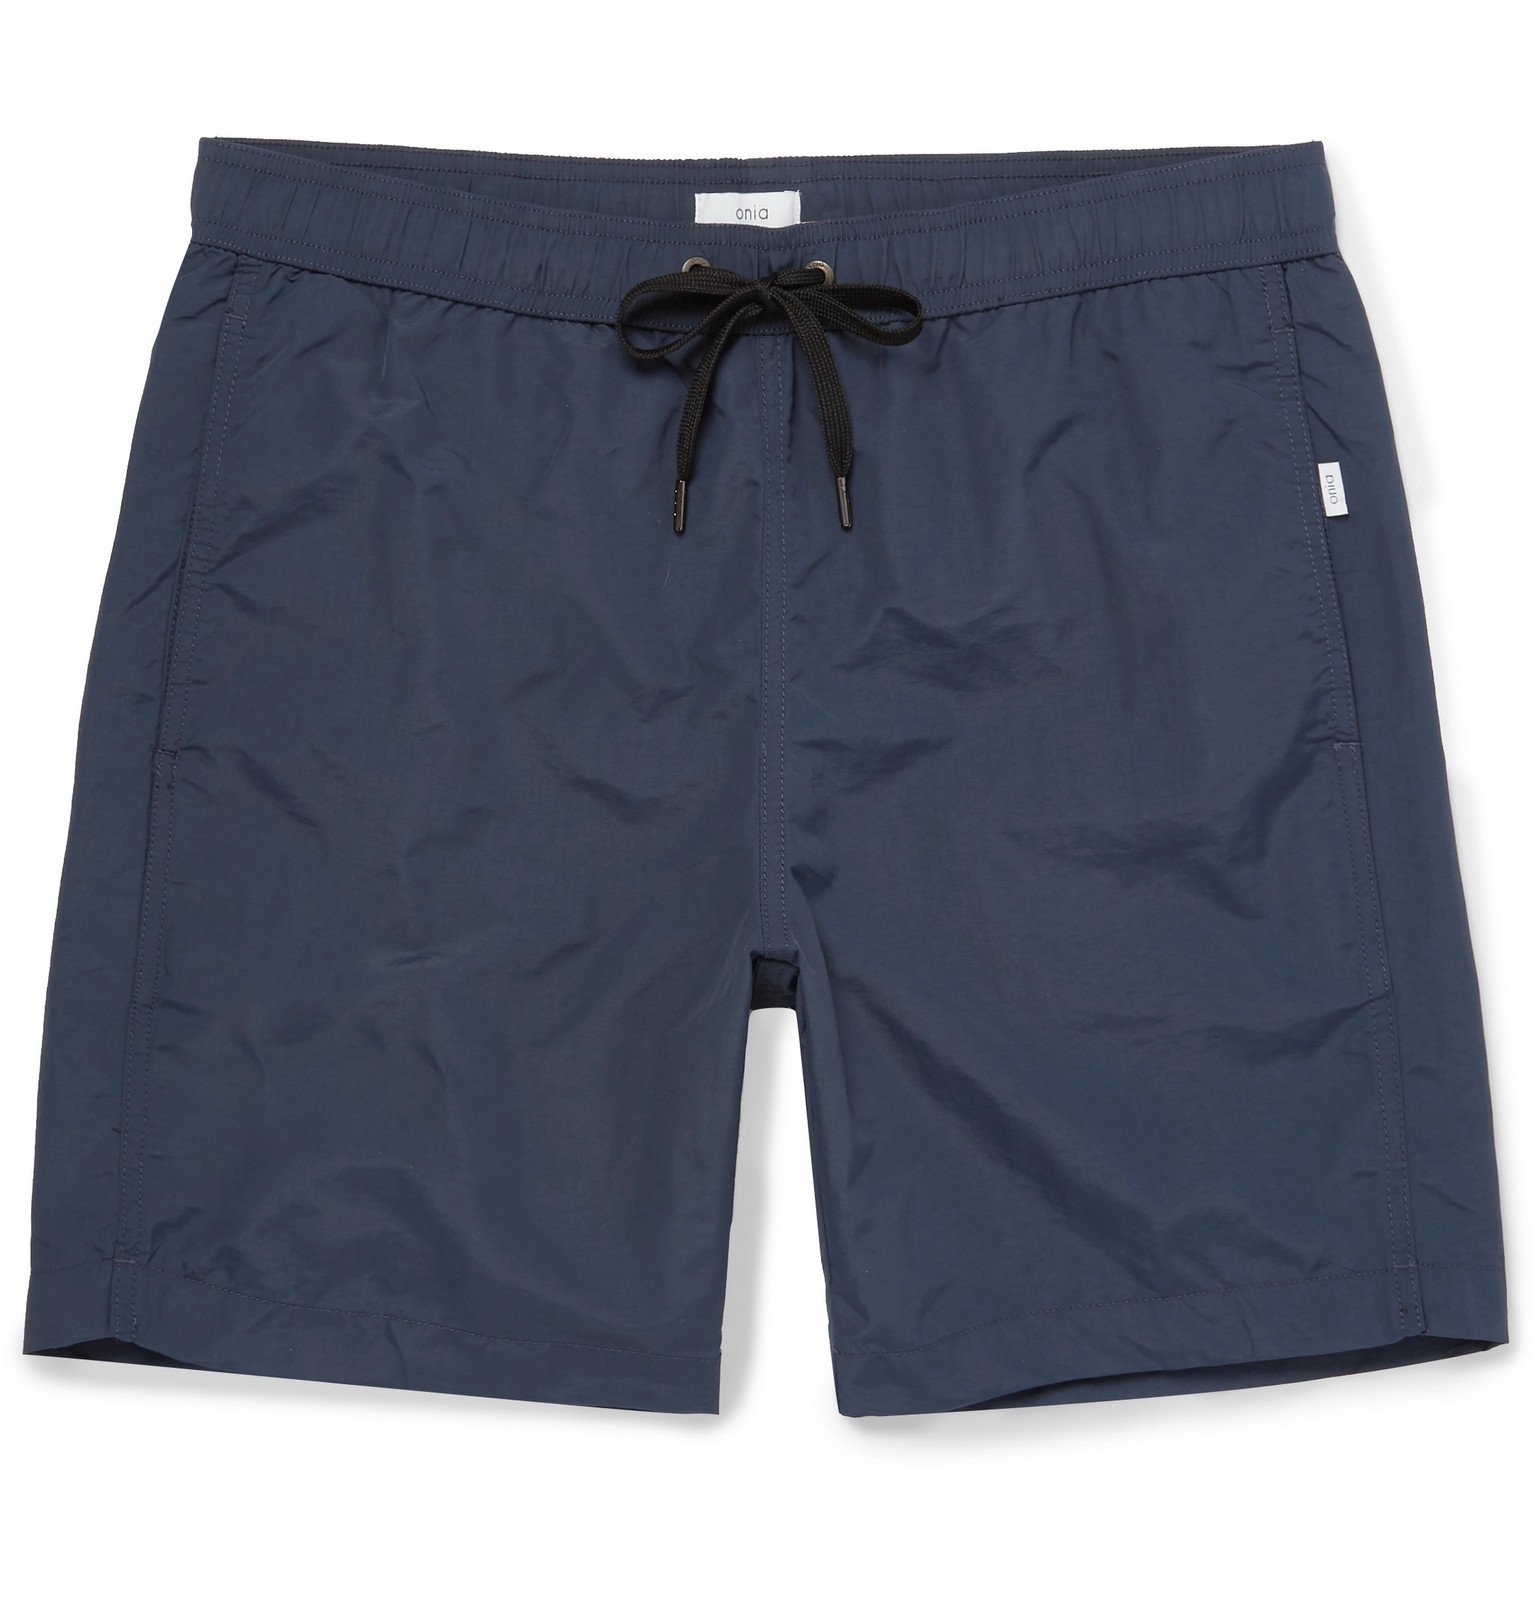 Onia - Charles Mid-Length Swim Shorts - Blue Onia